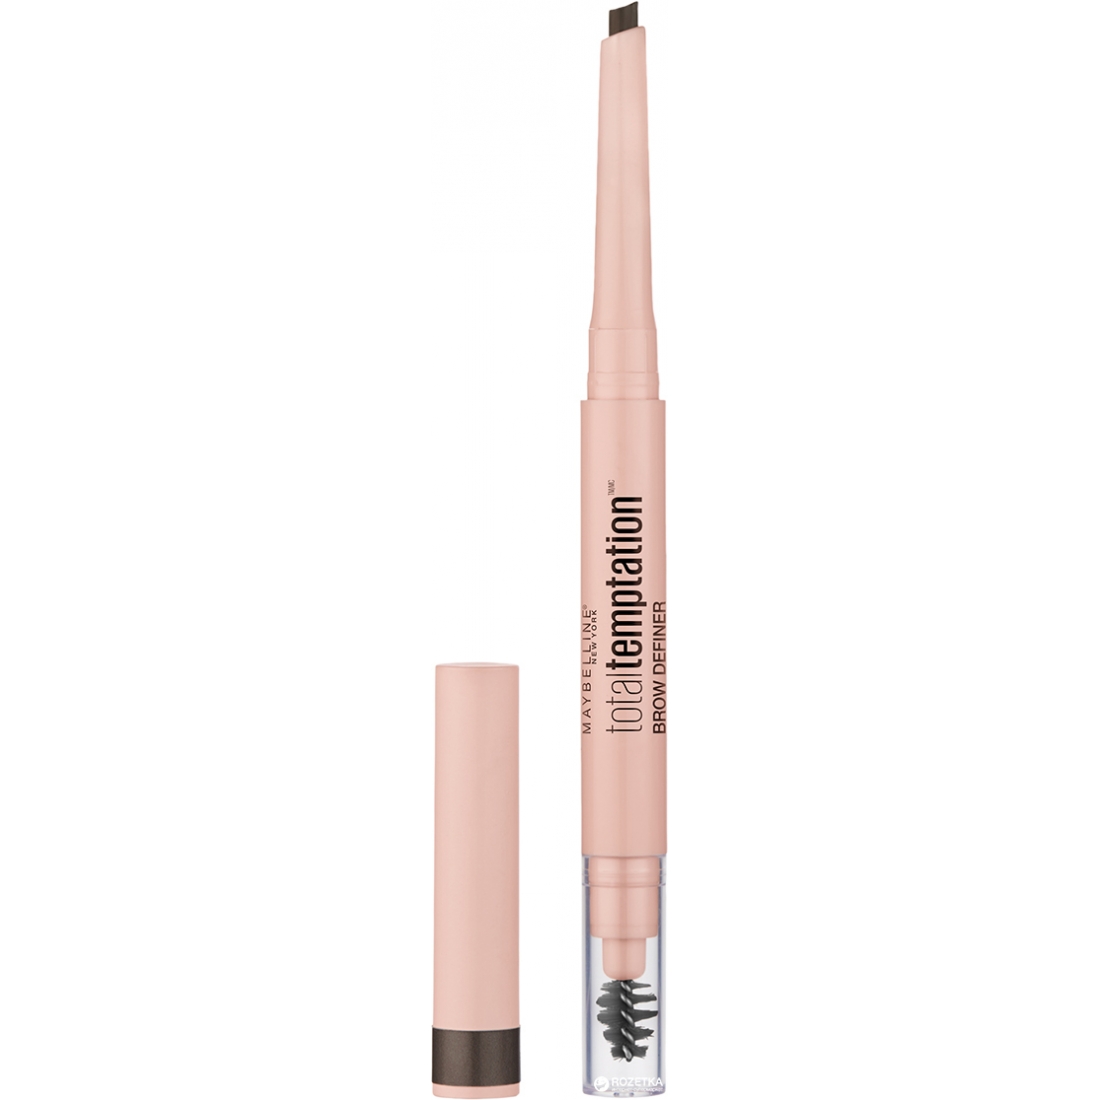 'Brow Definer Total Temptation' Eyebrow Pencil - 130 Deep Brown 15 g